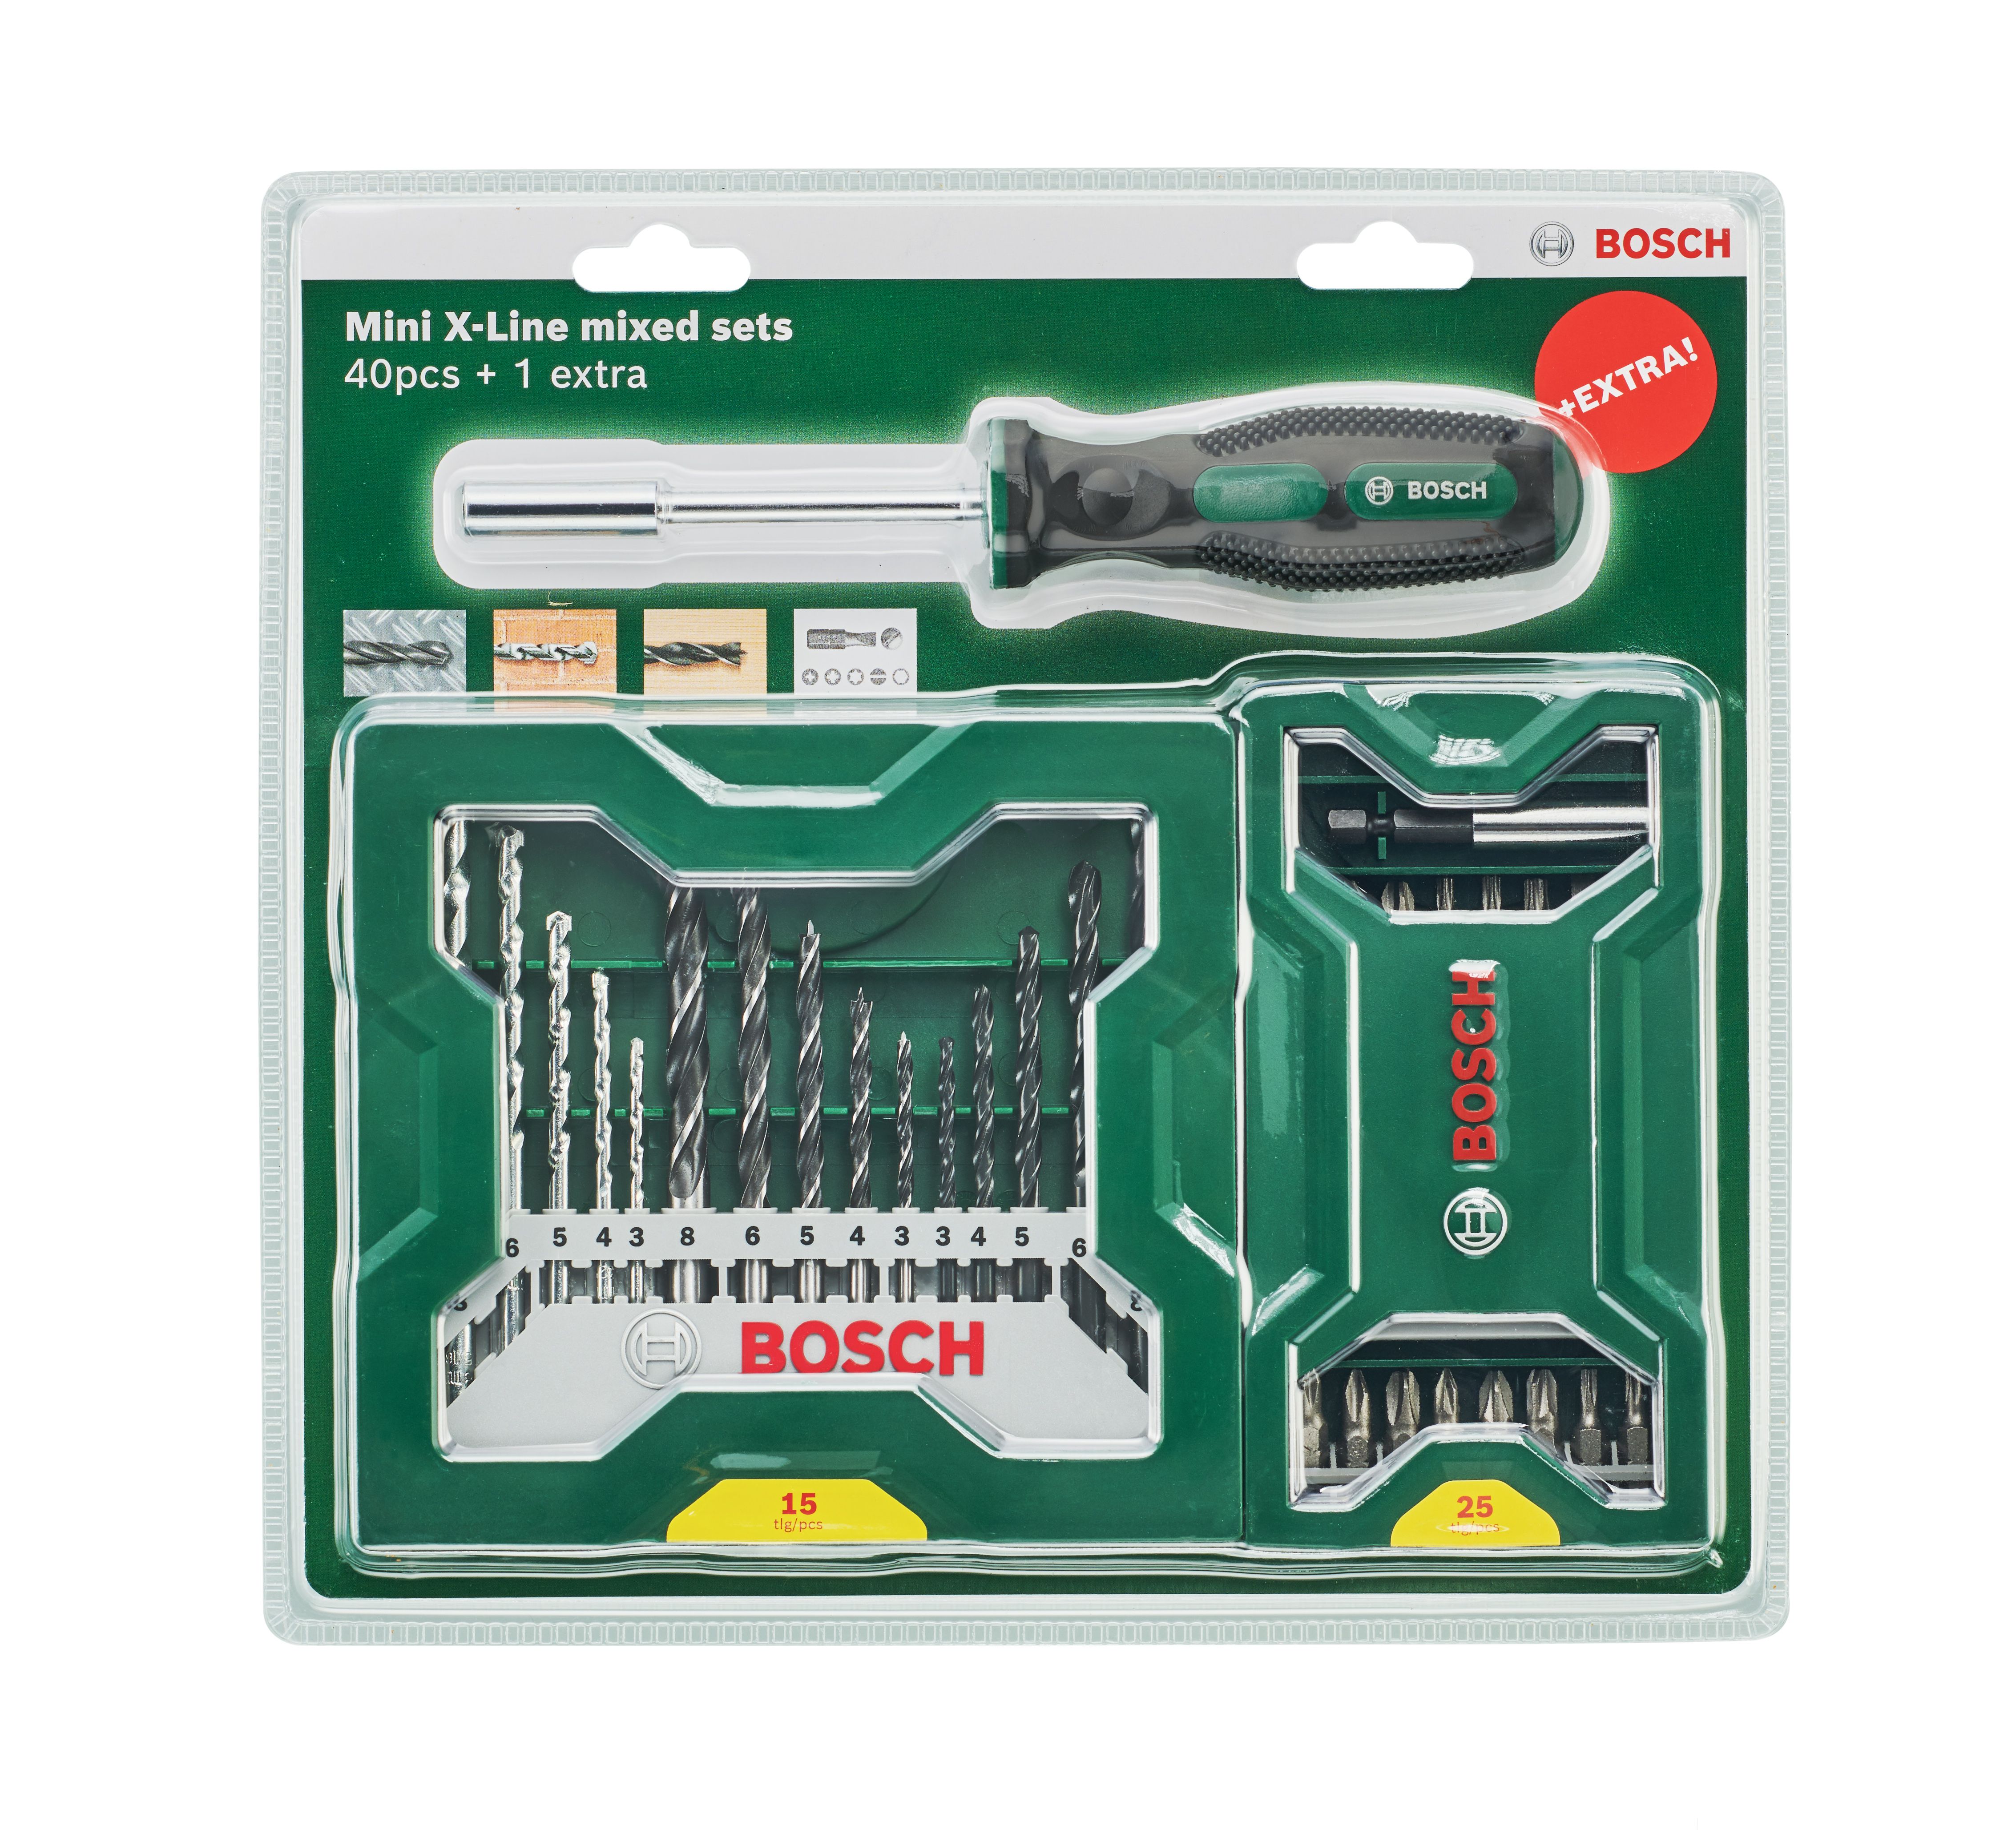 Bosch Promoline 41 piece Round Mixed Drill & screwdriver bit set